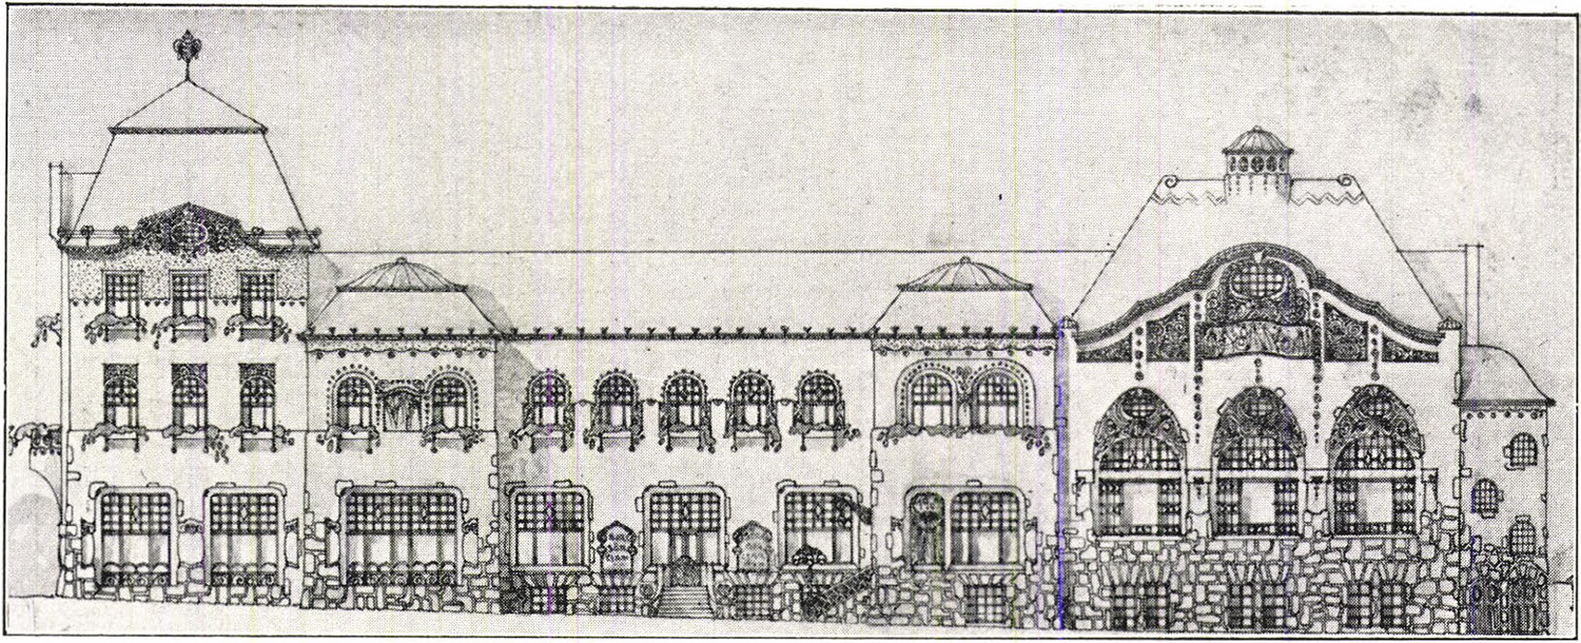 A Goldmann Izsóval közösen készített pályamű a breznóbányavárosi vigadó és szálloda tervpályázatára, 1909